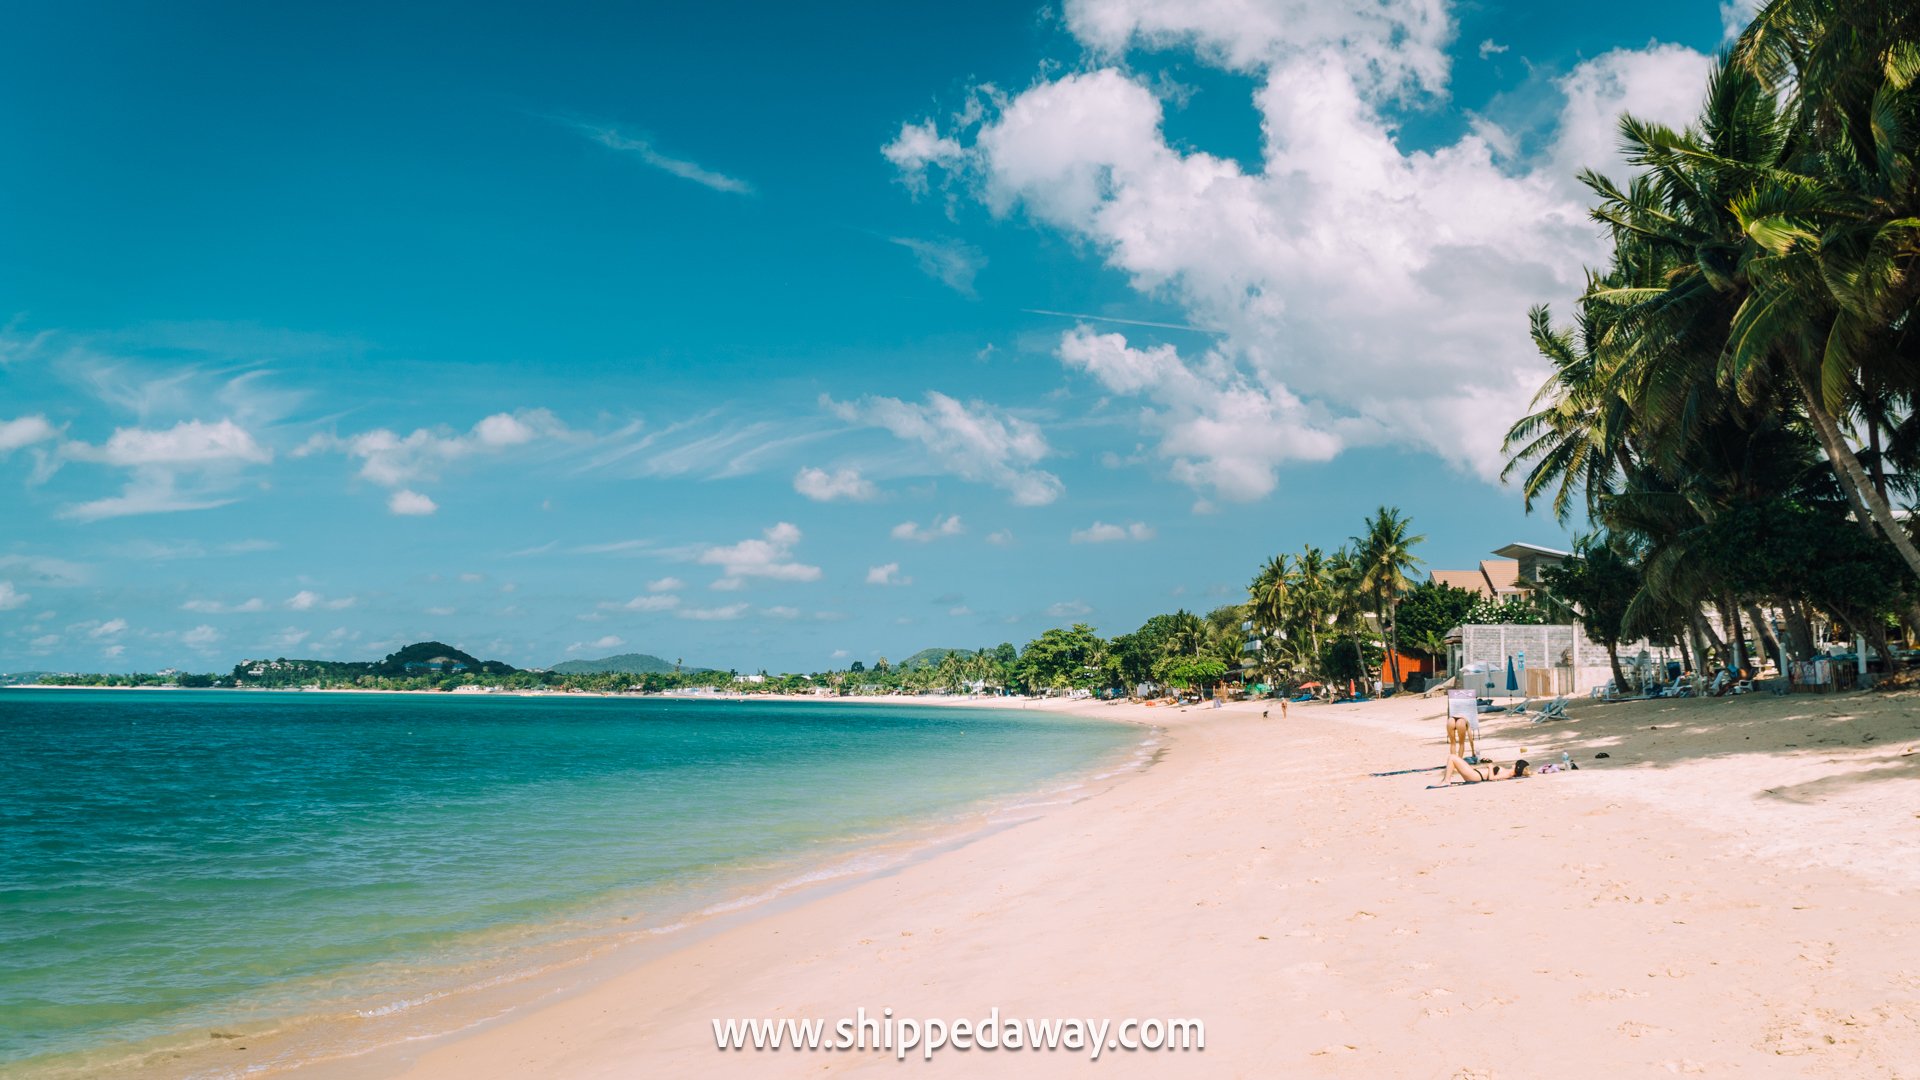 Maenam Beach in Koh Samui, Thailand